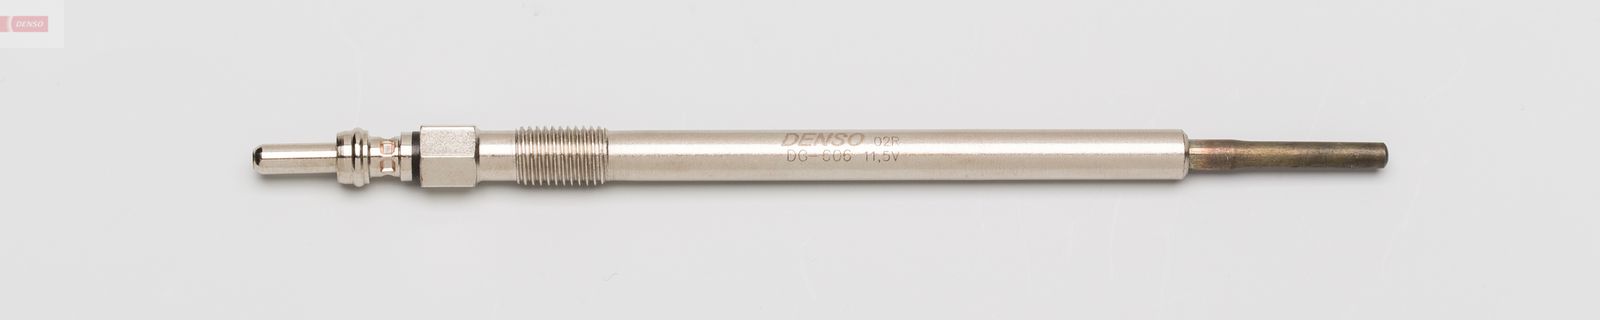 Žhavící svíčka DENSO DG-606